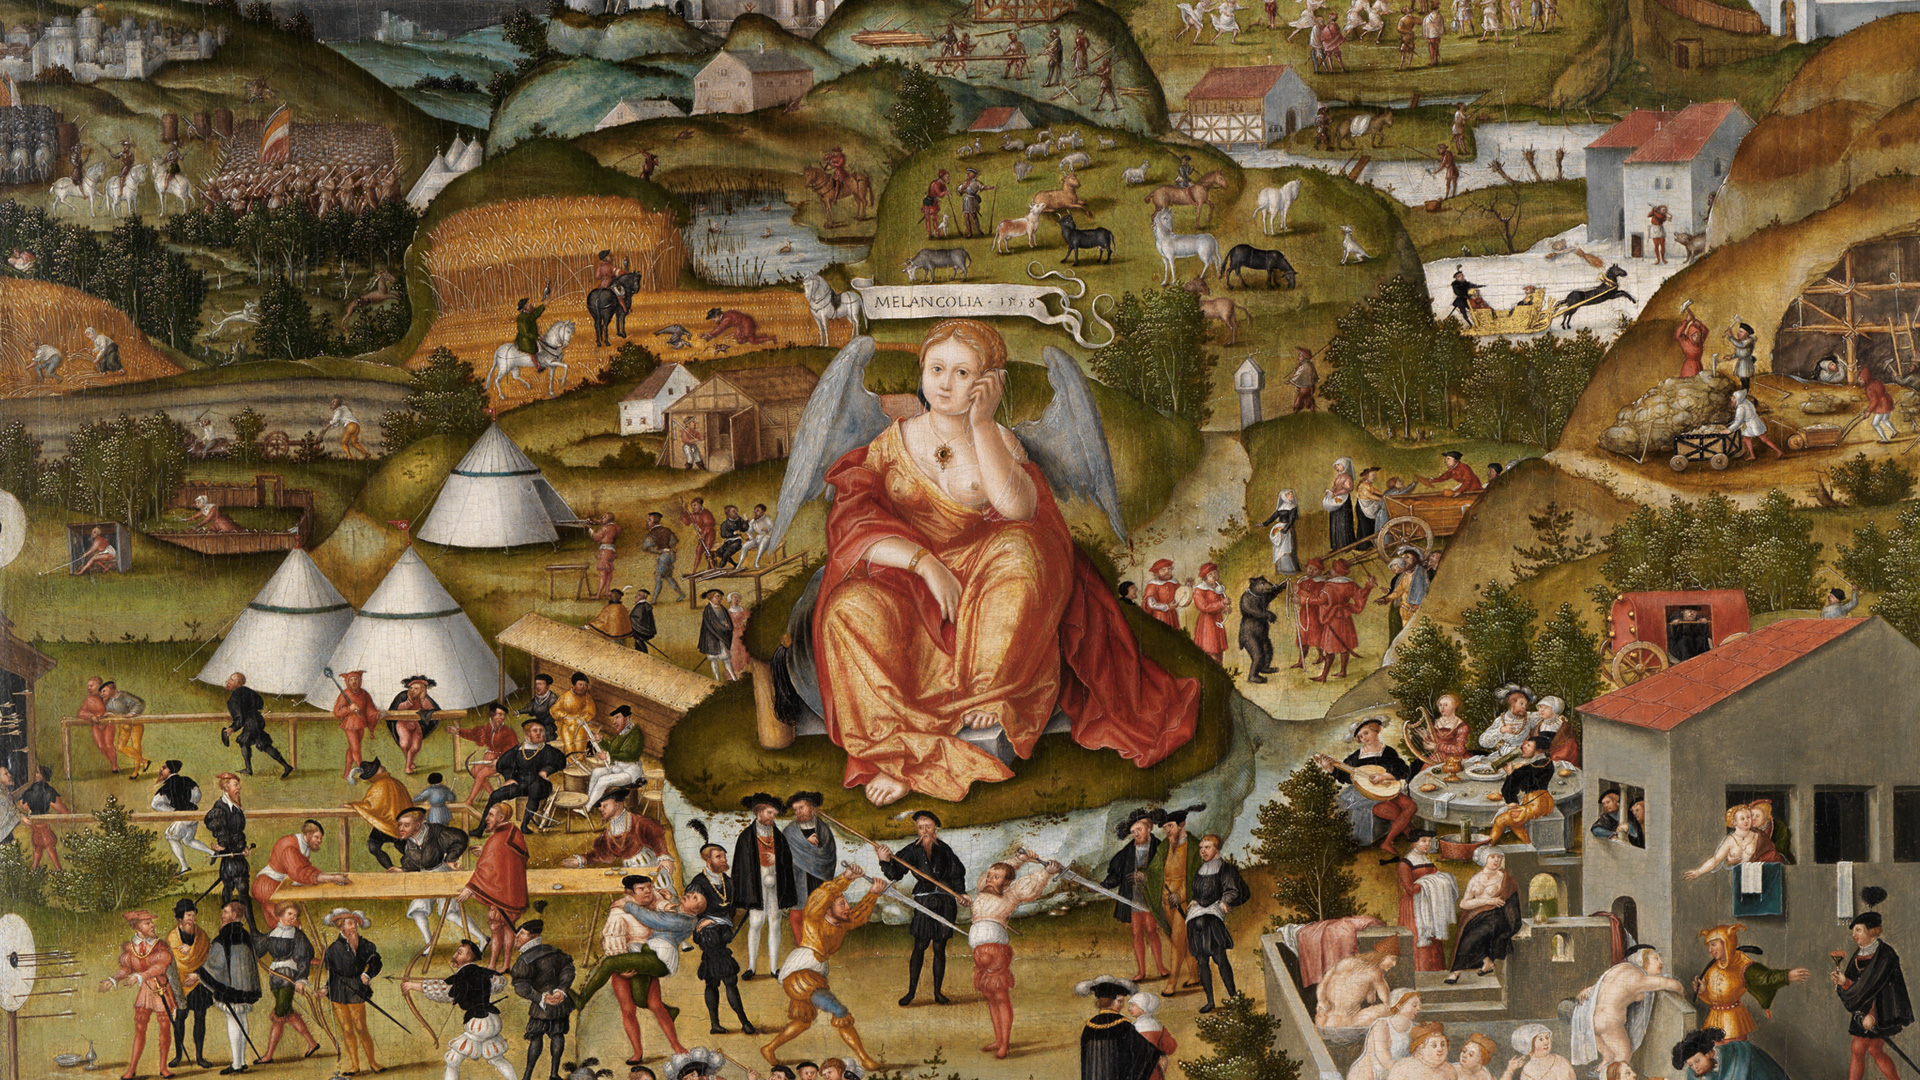 Das Gemälde stellt zahlreiche kleine Personen dar, die alltäglichen Arbeitsaufgaben und Vergnügungen nachgehen. Im Mittelpunkt sieht man eine größer dargestellt Frau, die den Kopf in die Hand gestützt hat.